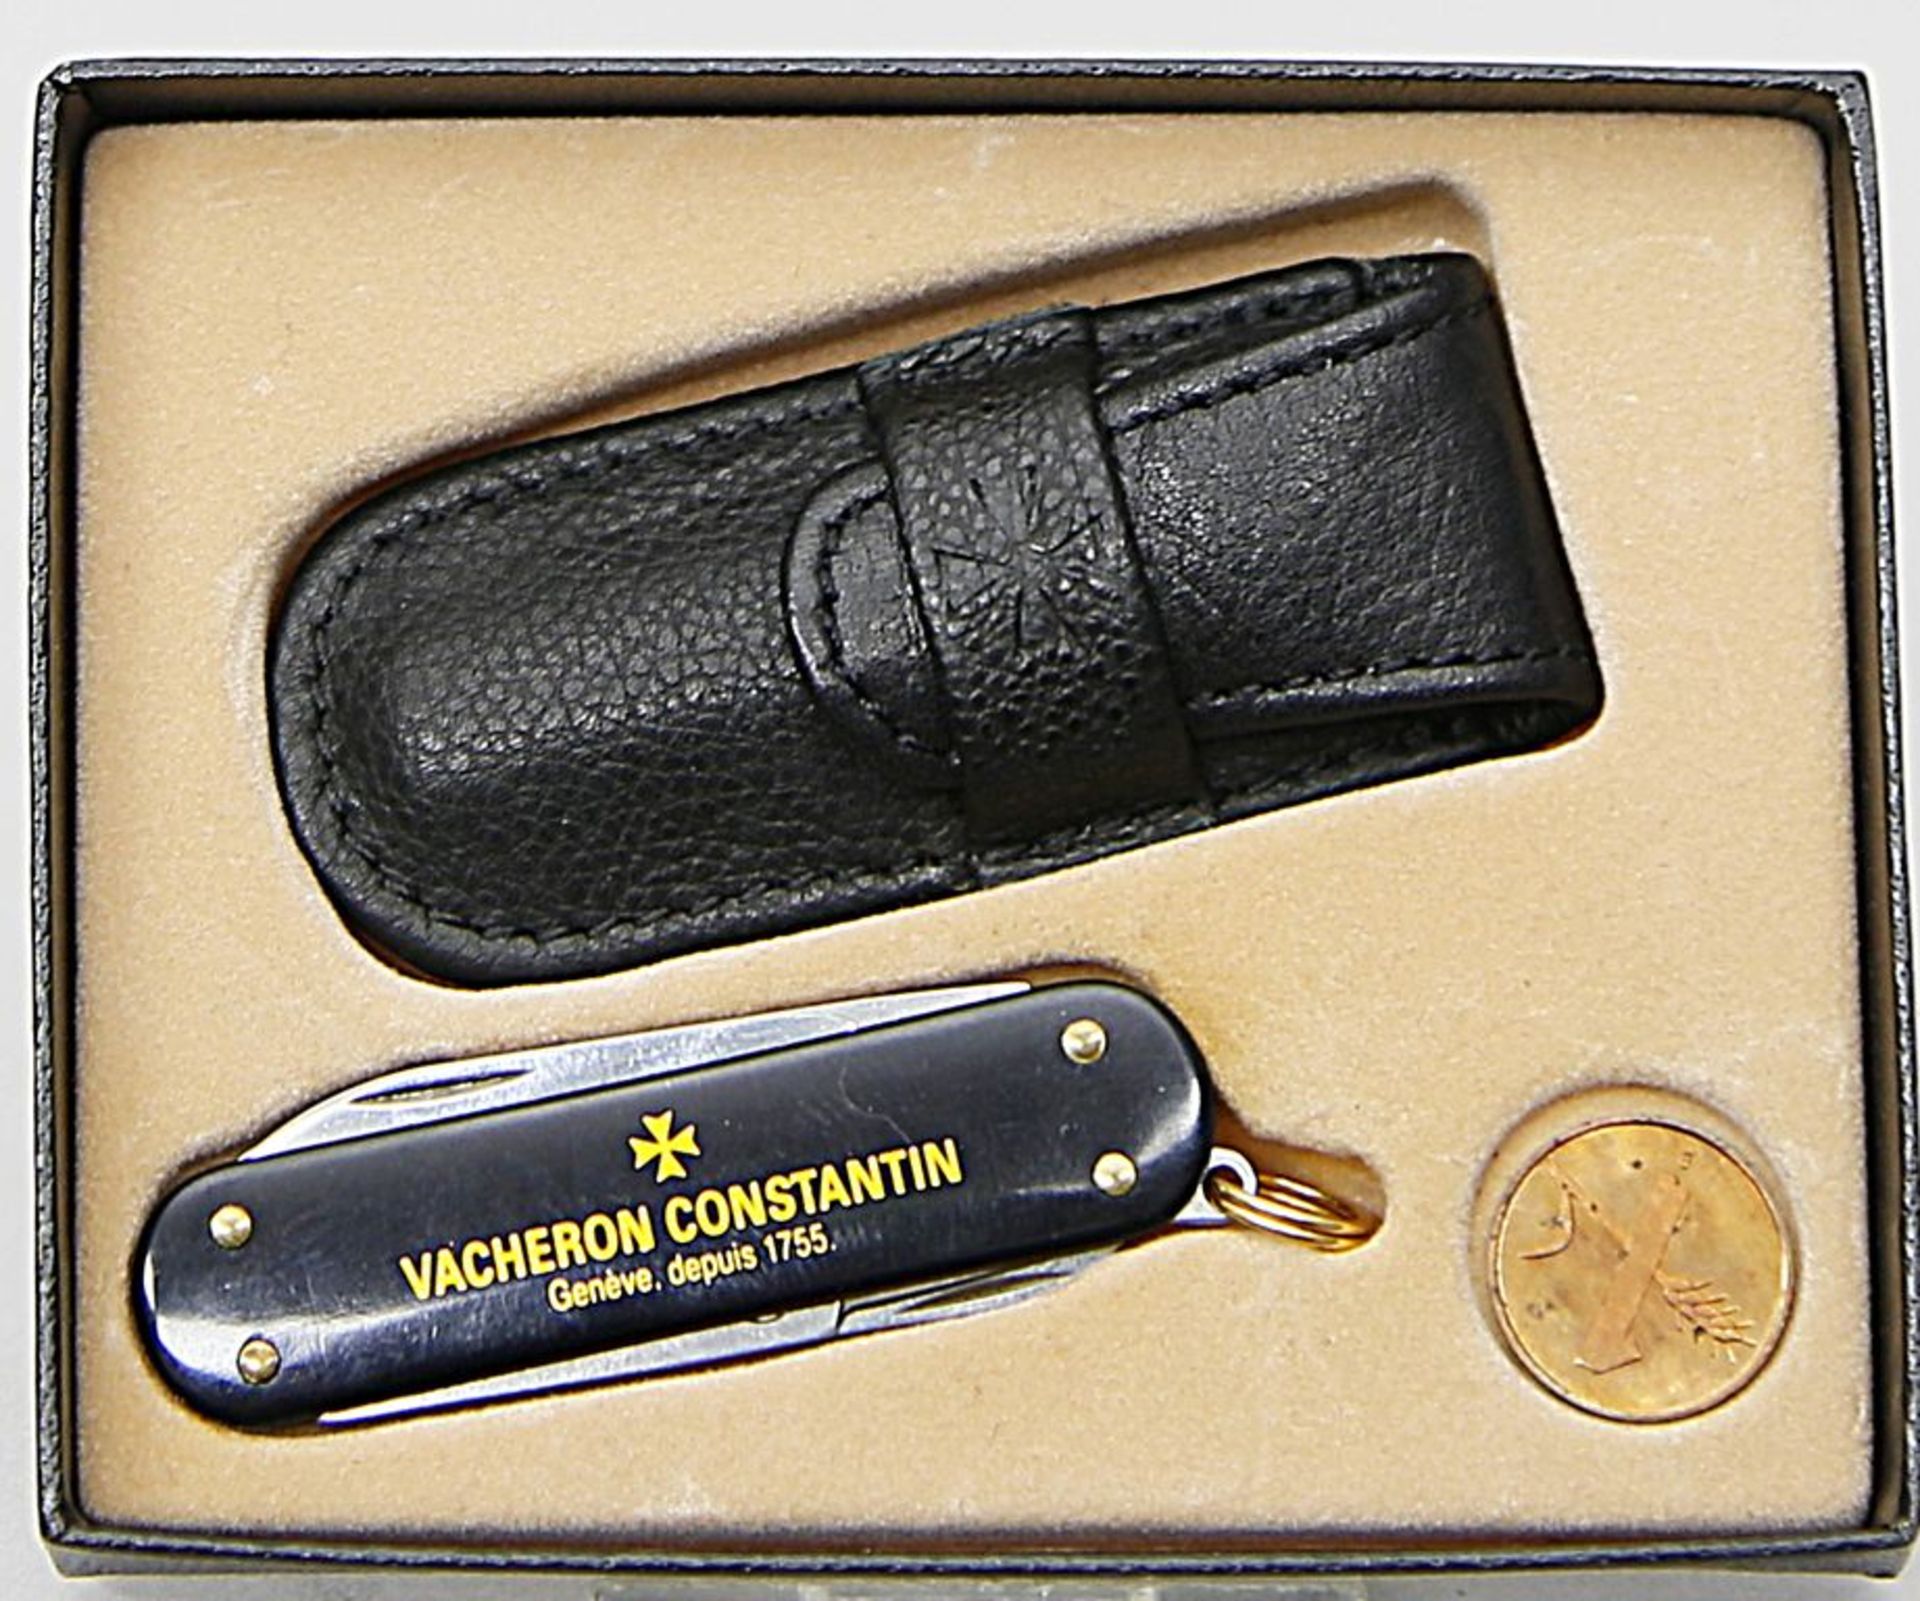 Werbe-Taschenmesser, Vacheron Constantin.